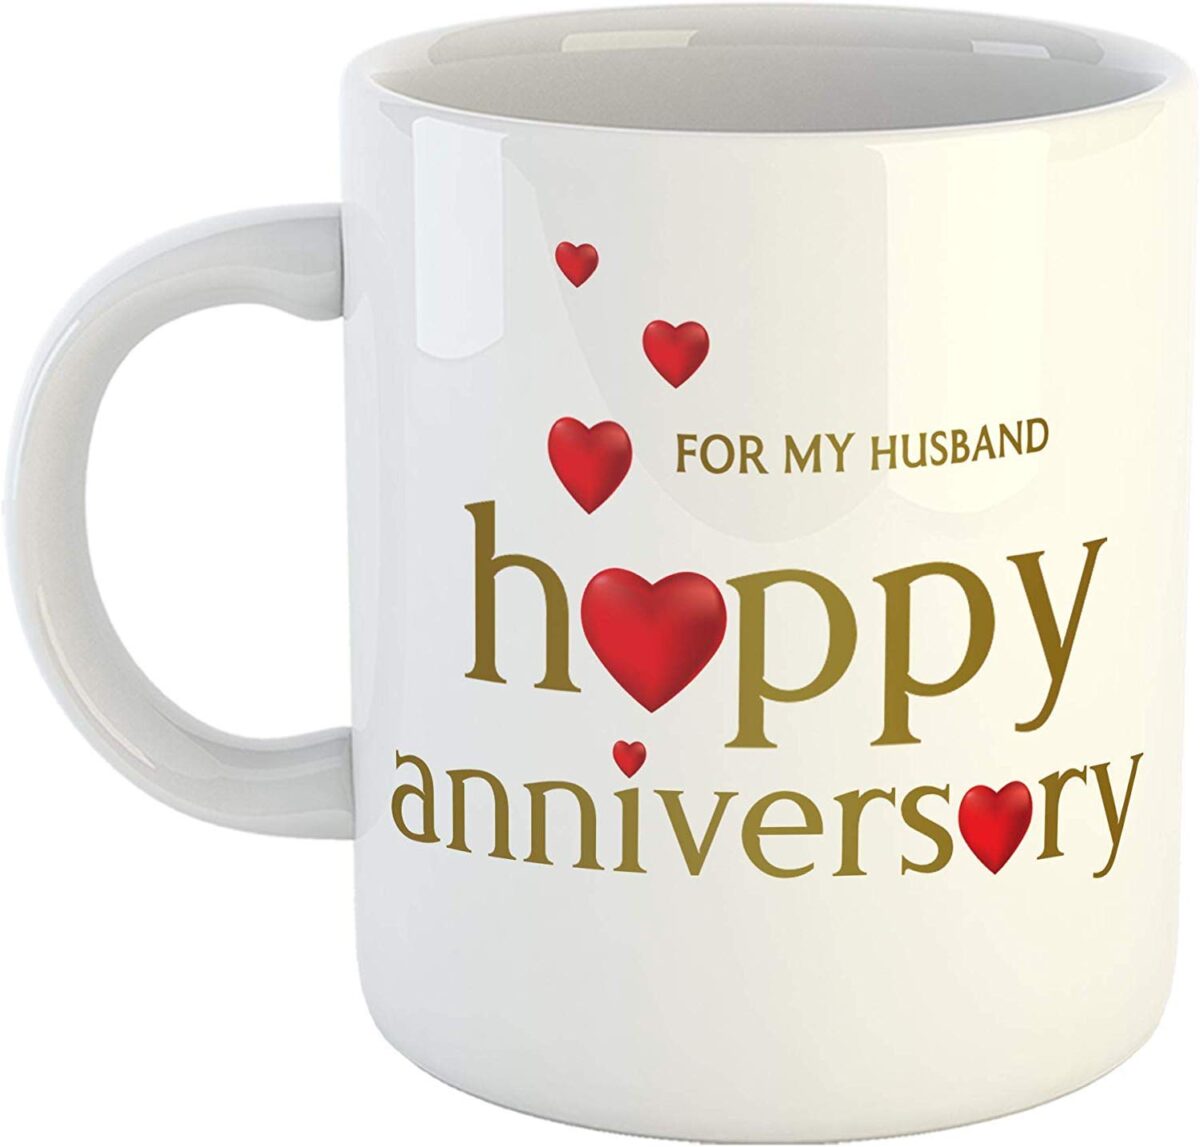 Anniversary Customised Mug